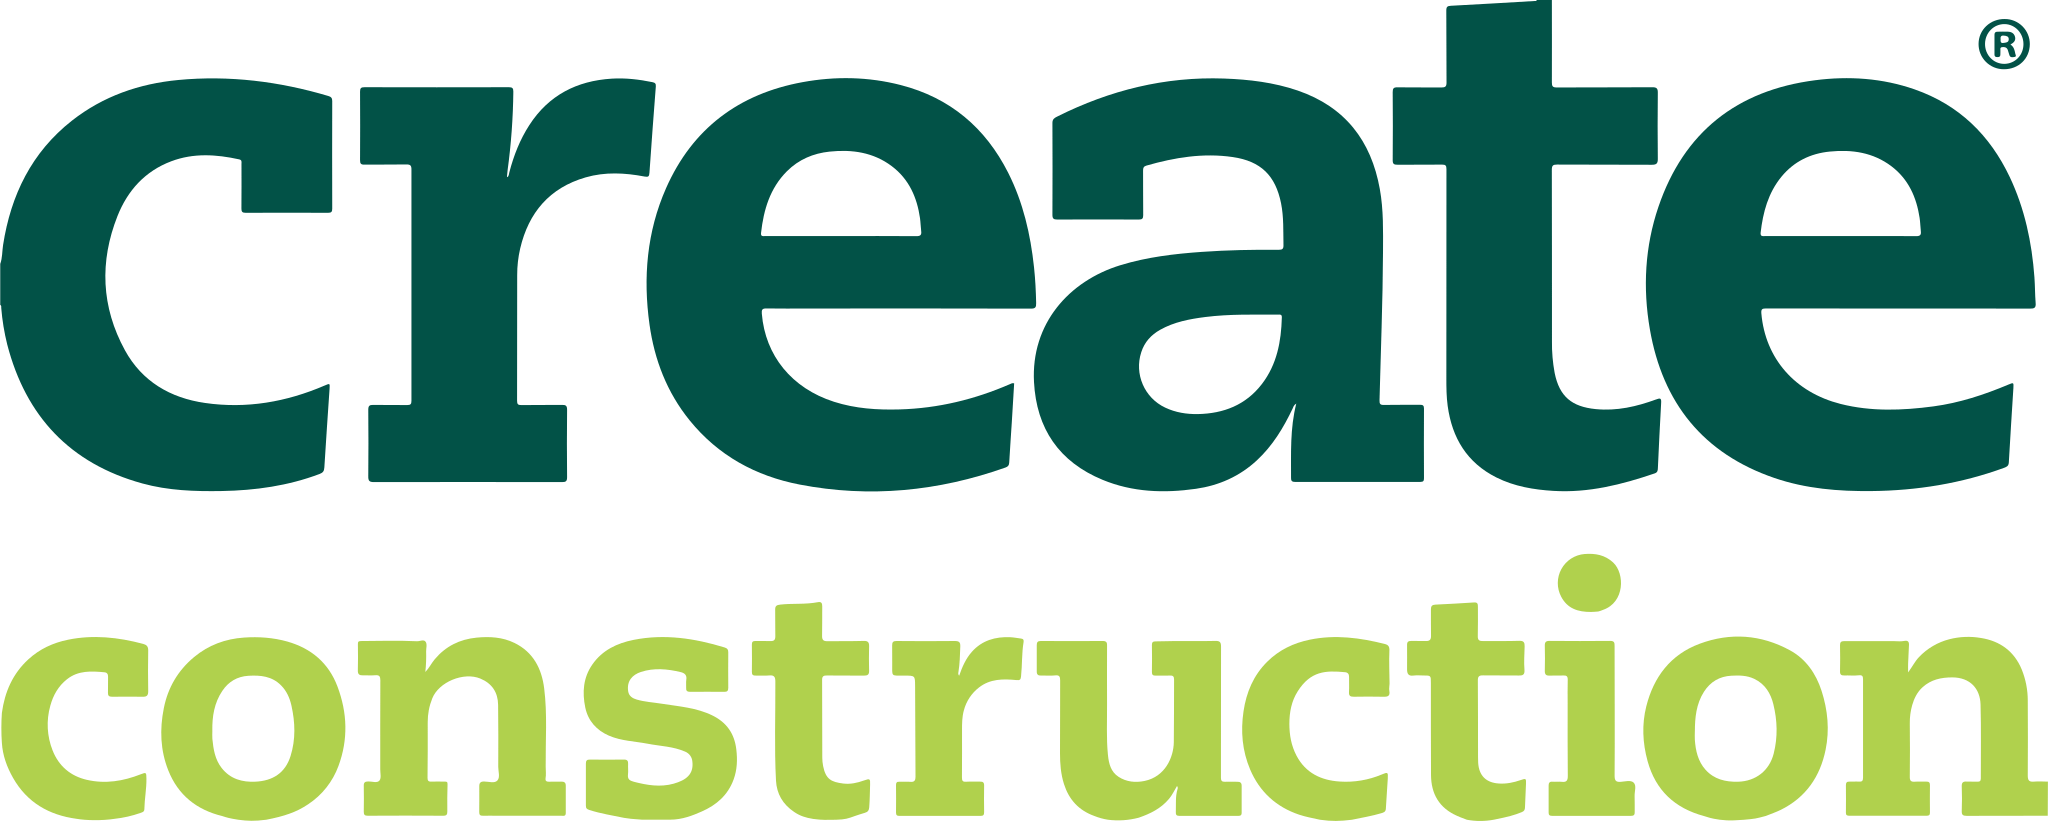 create-construction logo